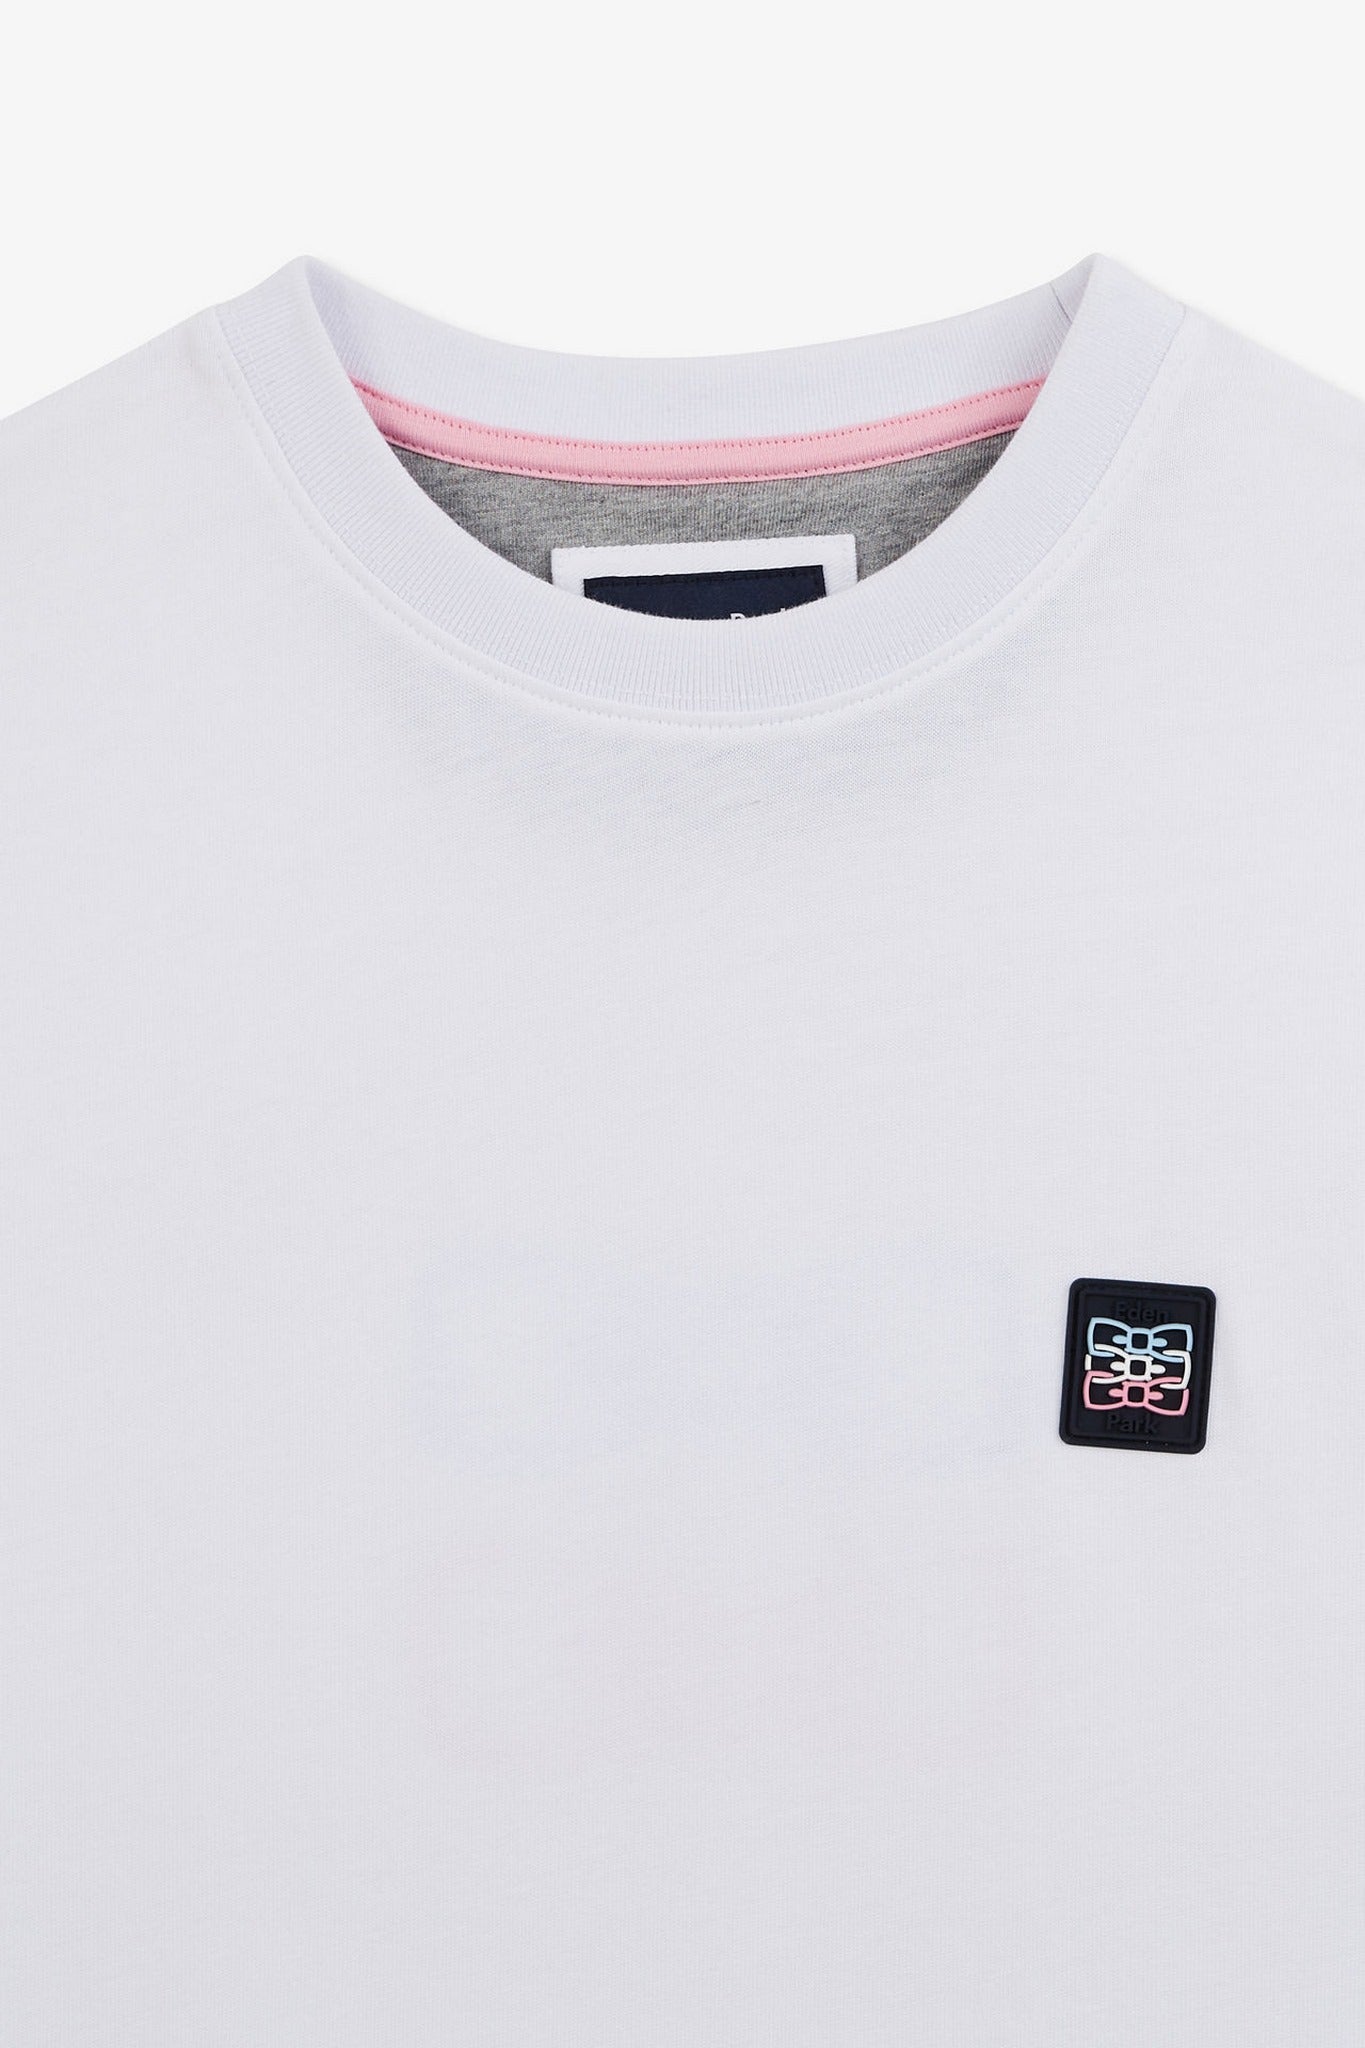 T-shirt manches courtes blanc avec logo reliefé